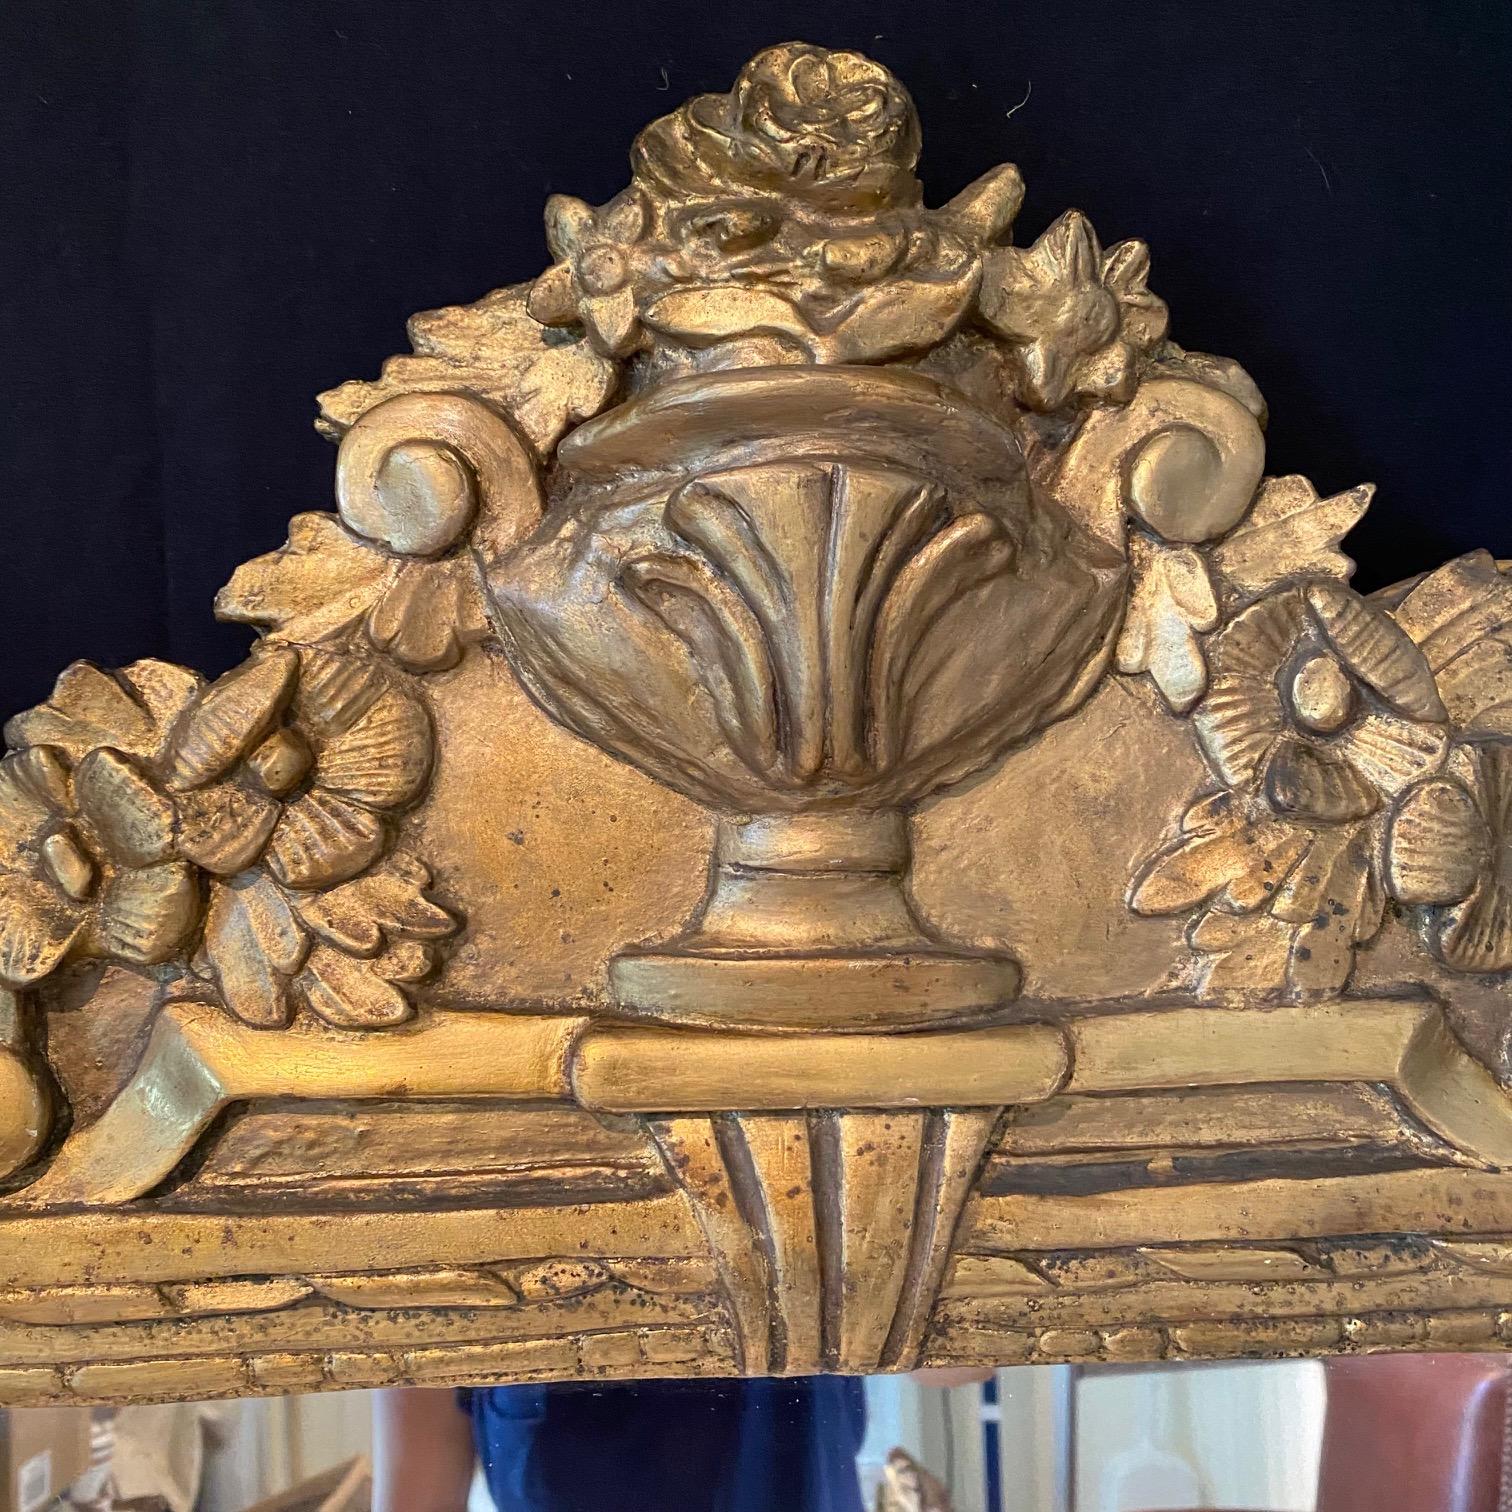 Miroir de France d'époque Louis XVI. Cette pièce est en bois stuqué et sculpté à la main, avec un fronton représentant une urne et de jolis motifs floraux.

#6462